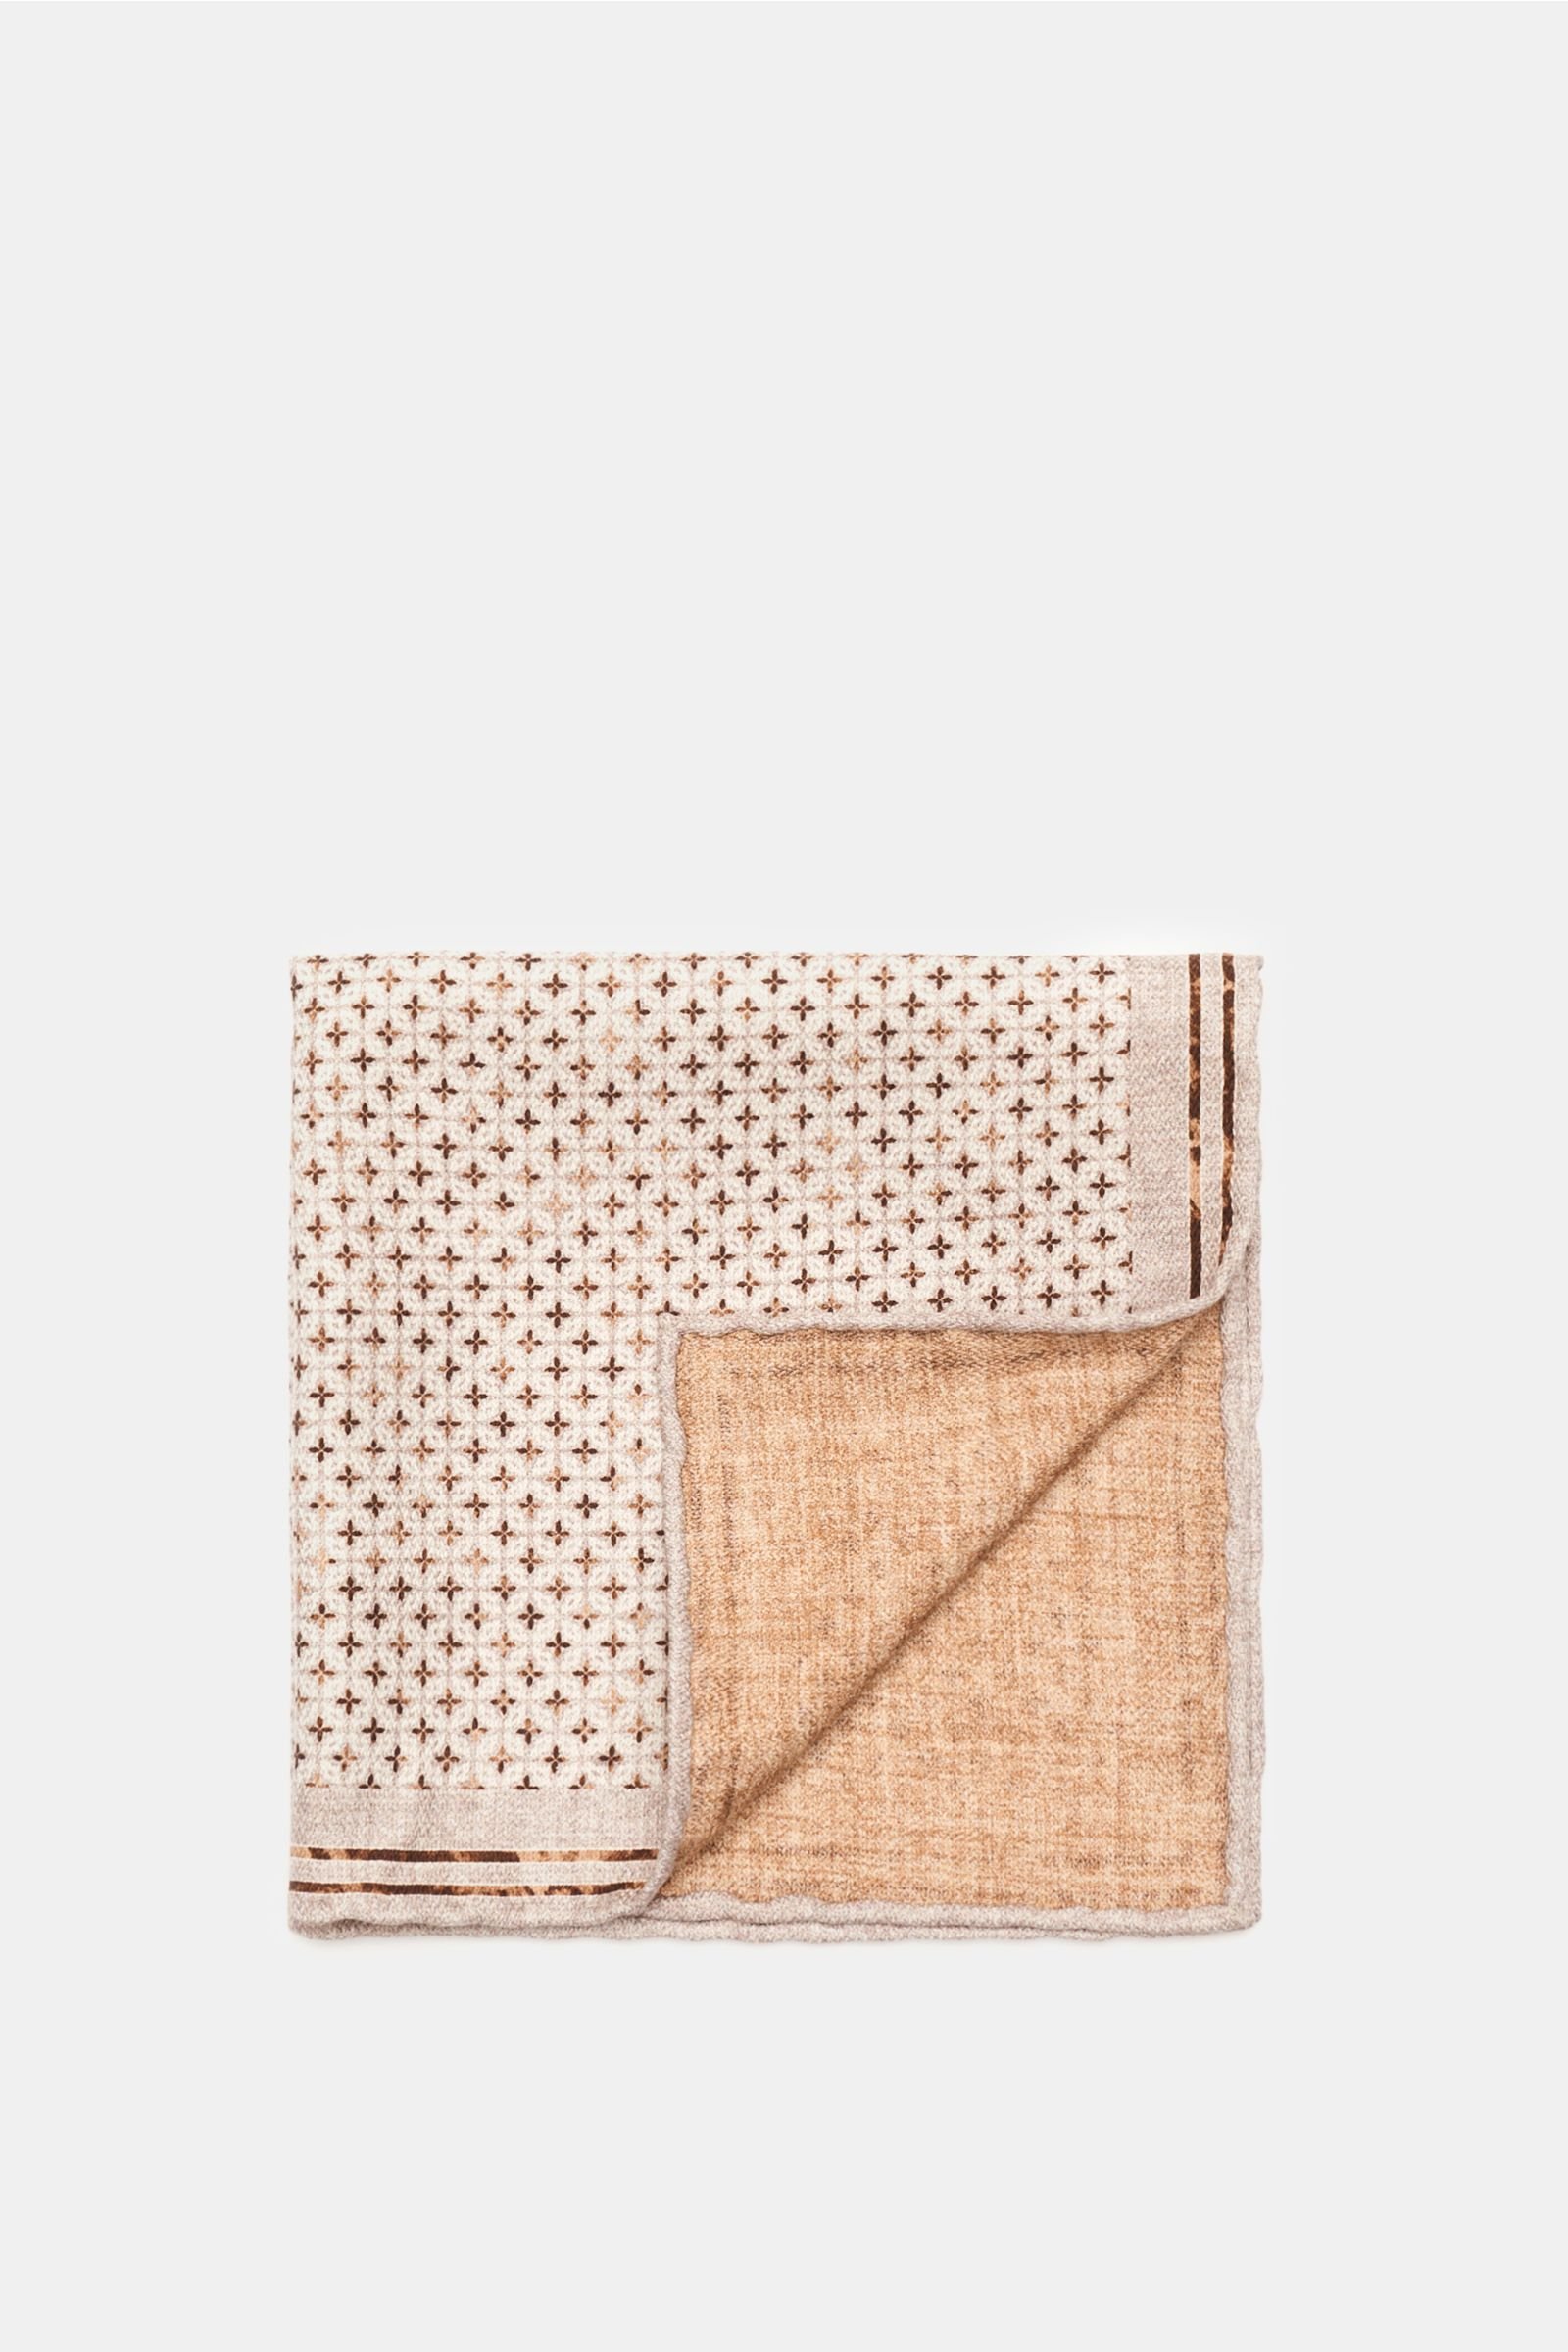 Pocket square beige/brown patterned